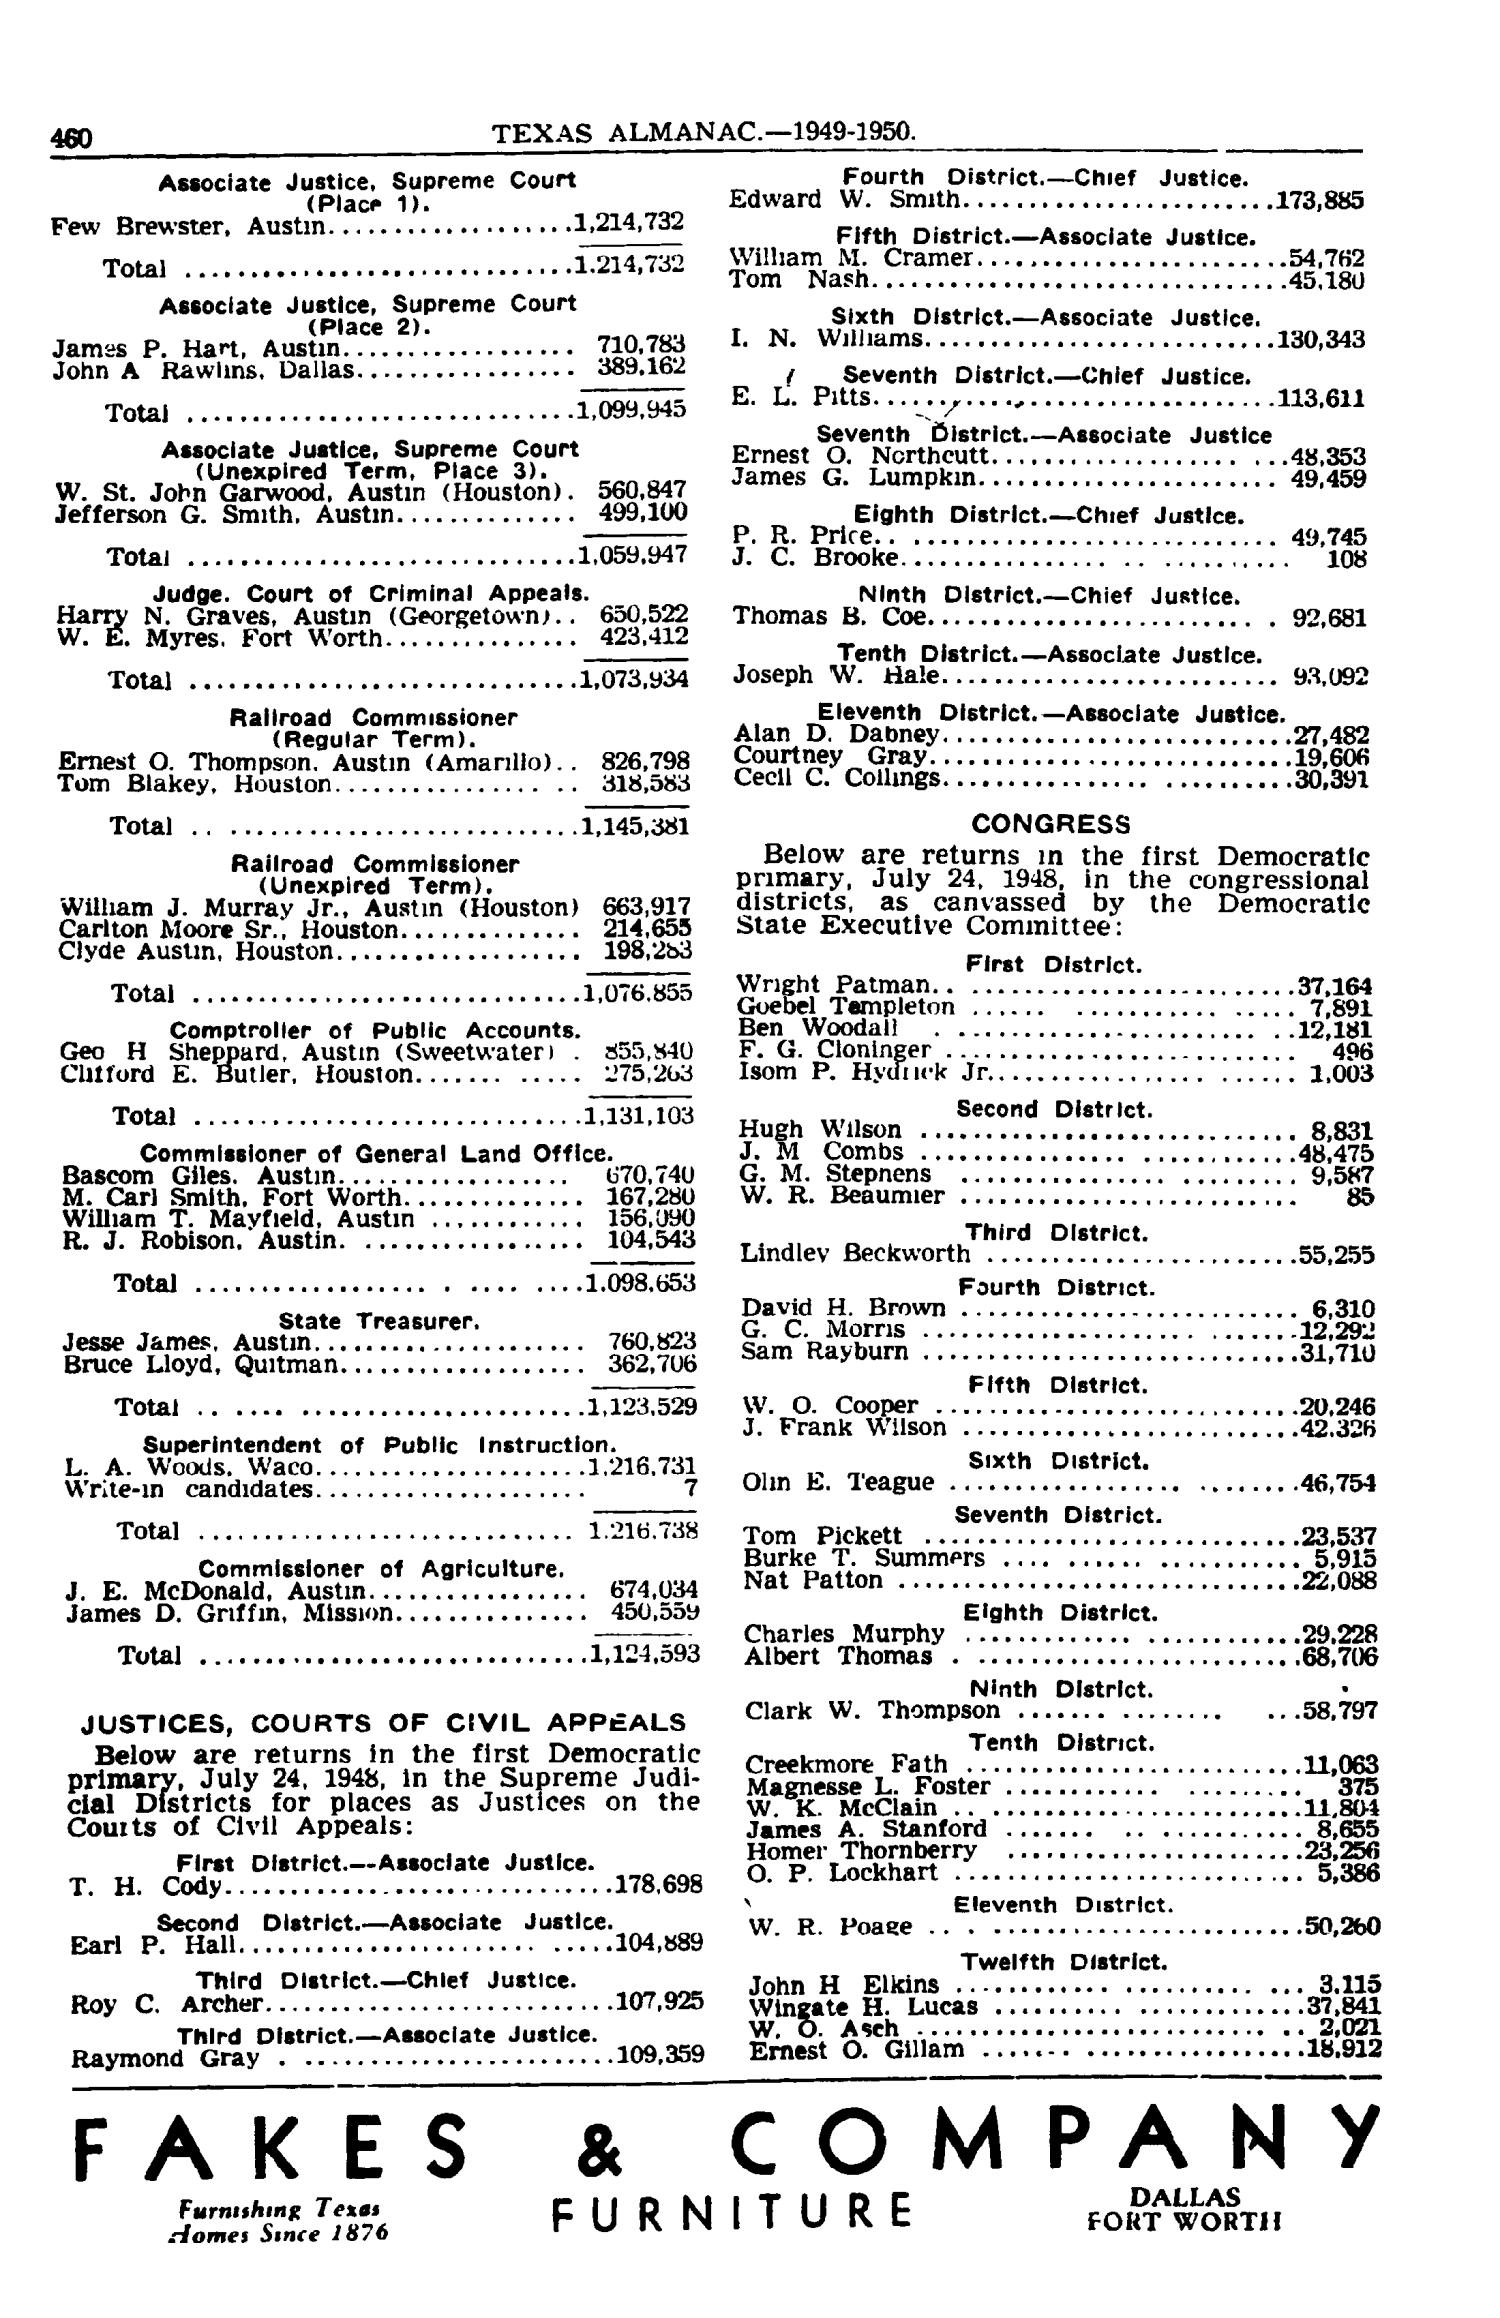 Texas Almanac, 1949-1950
                                                
                                                    460
                                                